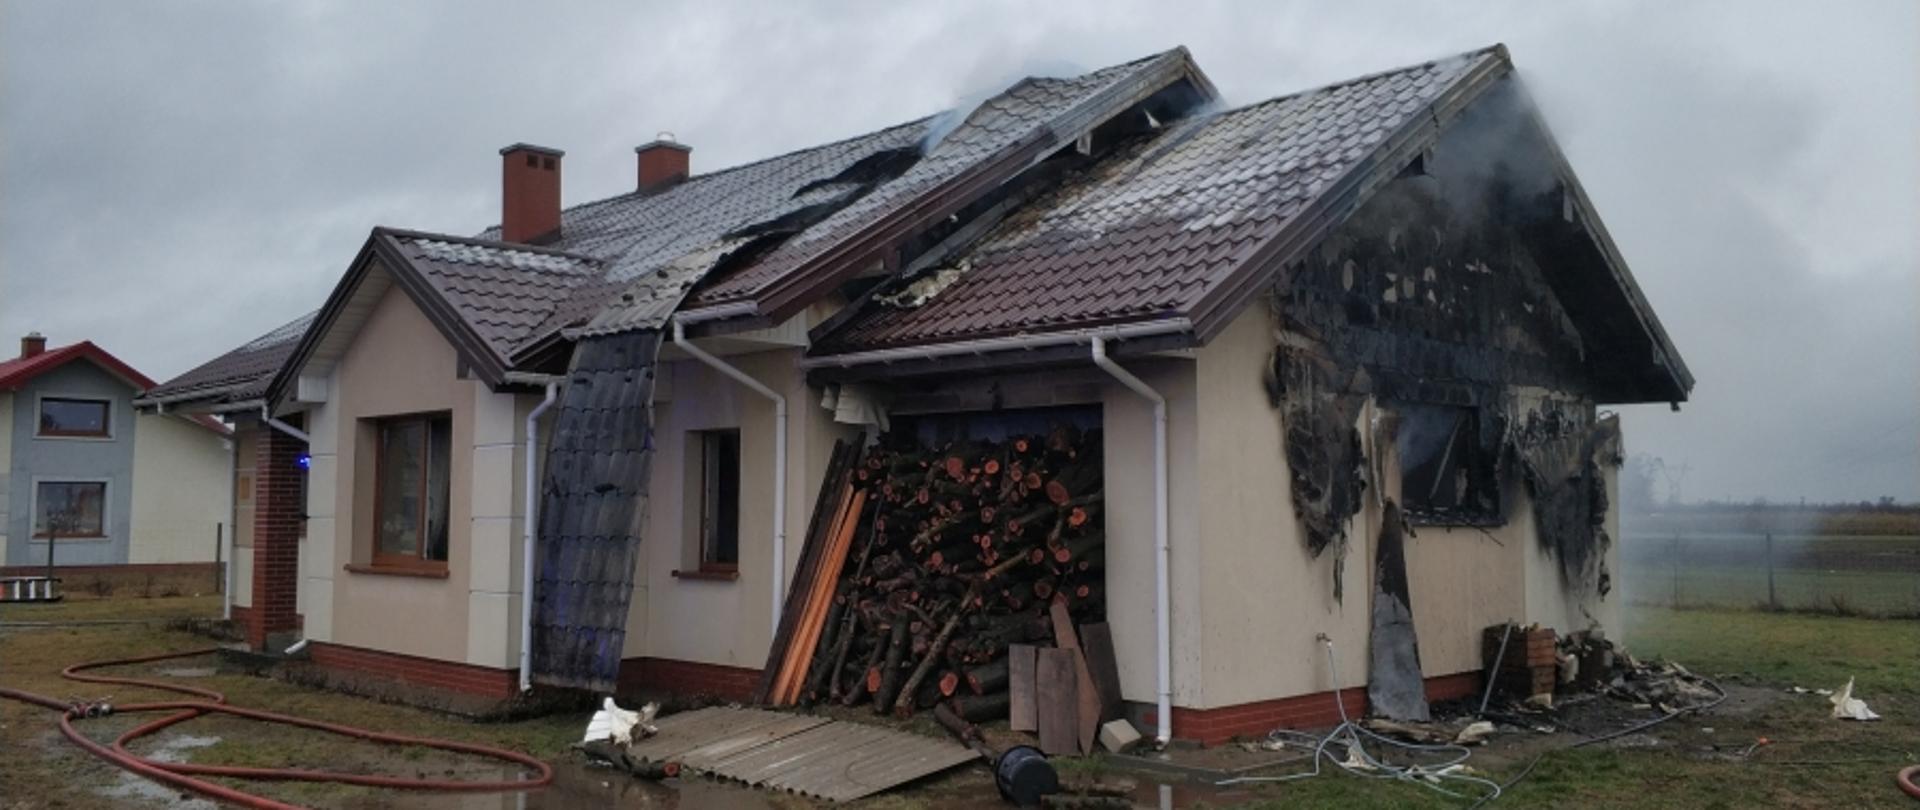 Na zdjęciu widać budynek, który się palił. Widać spaloną elewację ściany szczytowej oraz zerwaną blachę na dachu. Przed budynkiem rozwinięte linie wężowe.